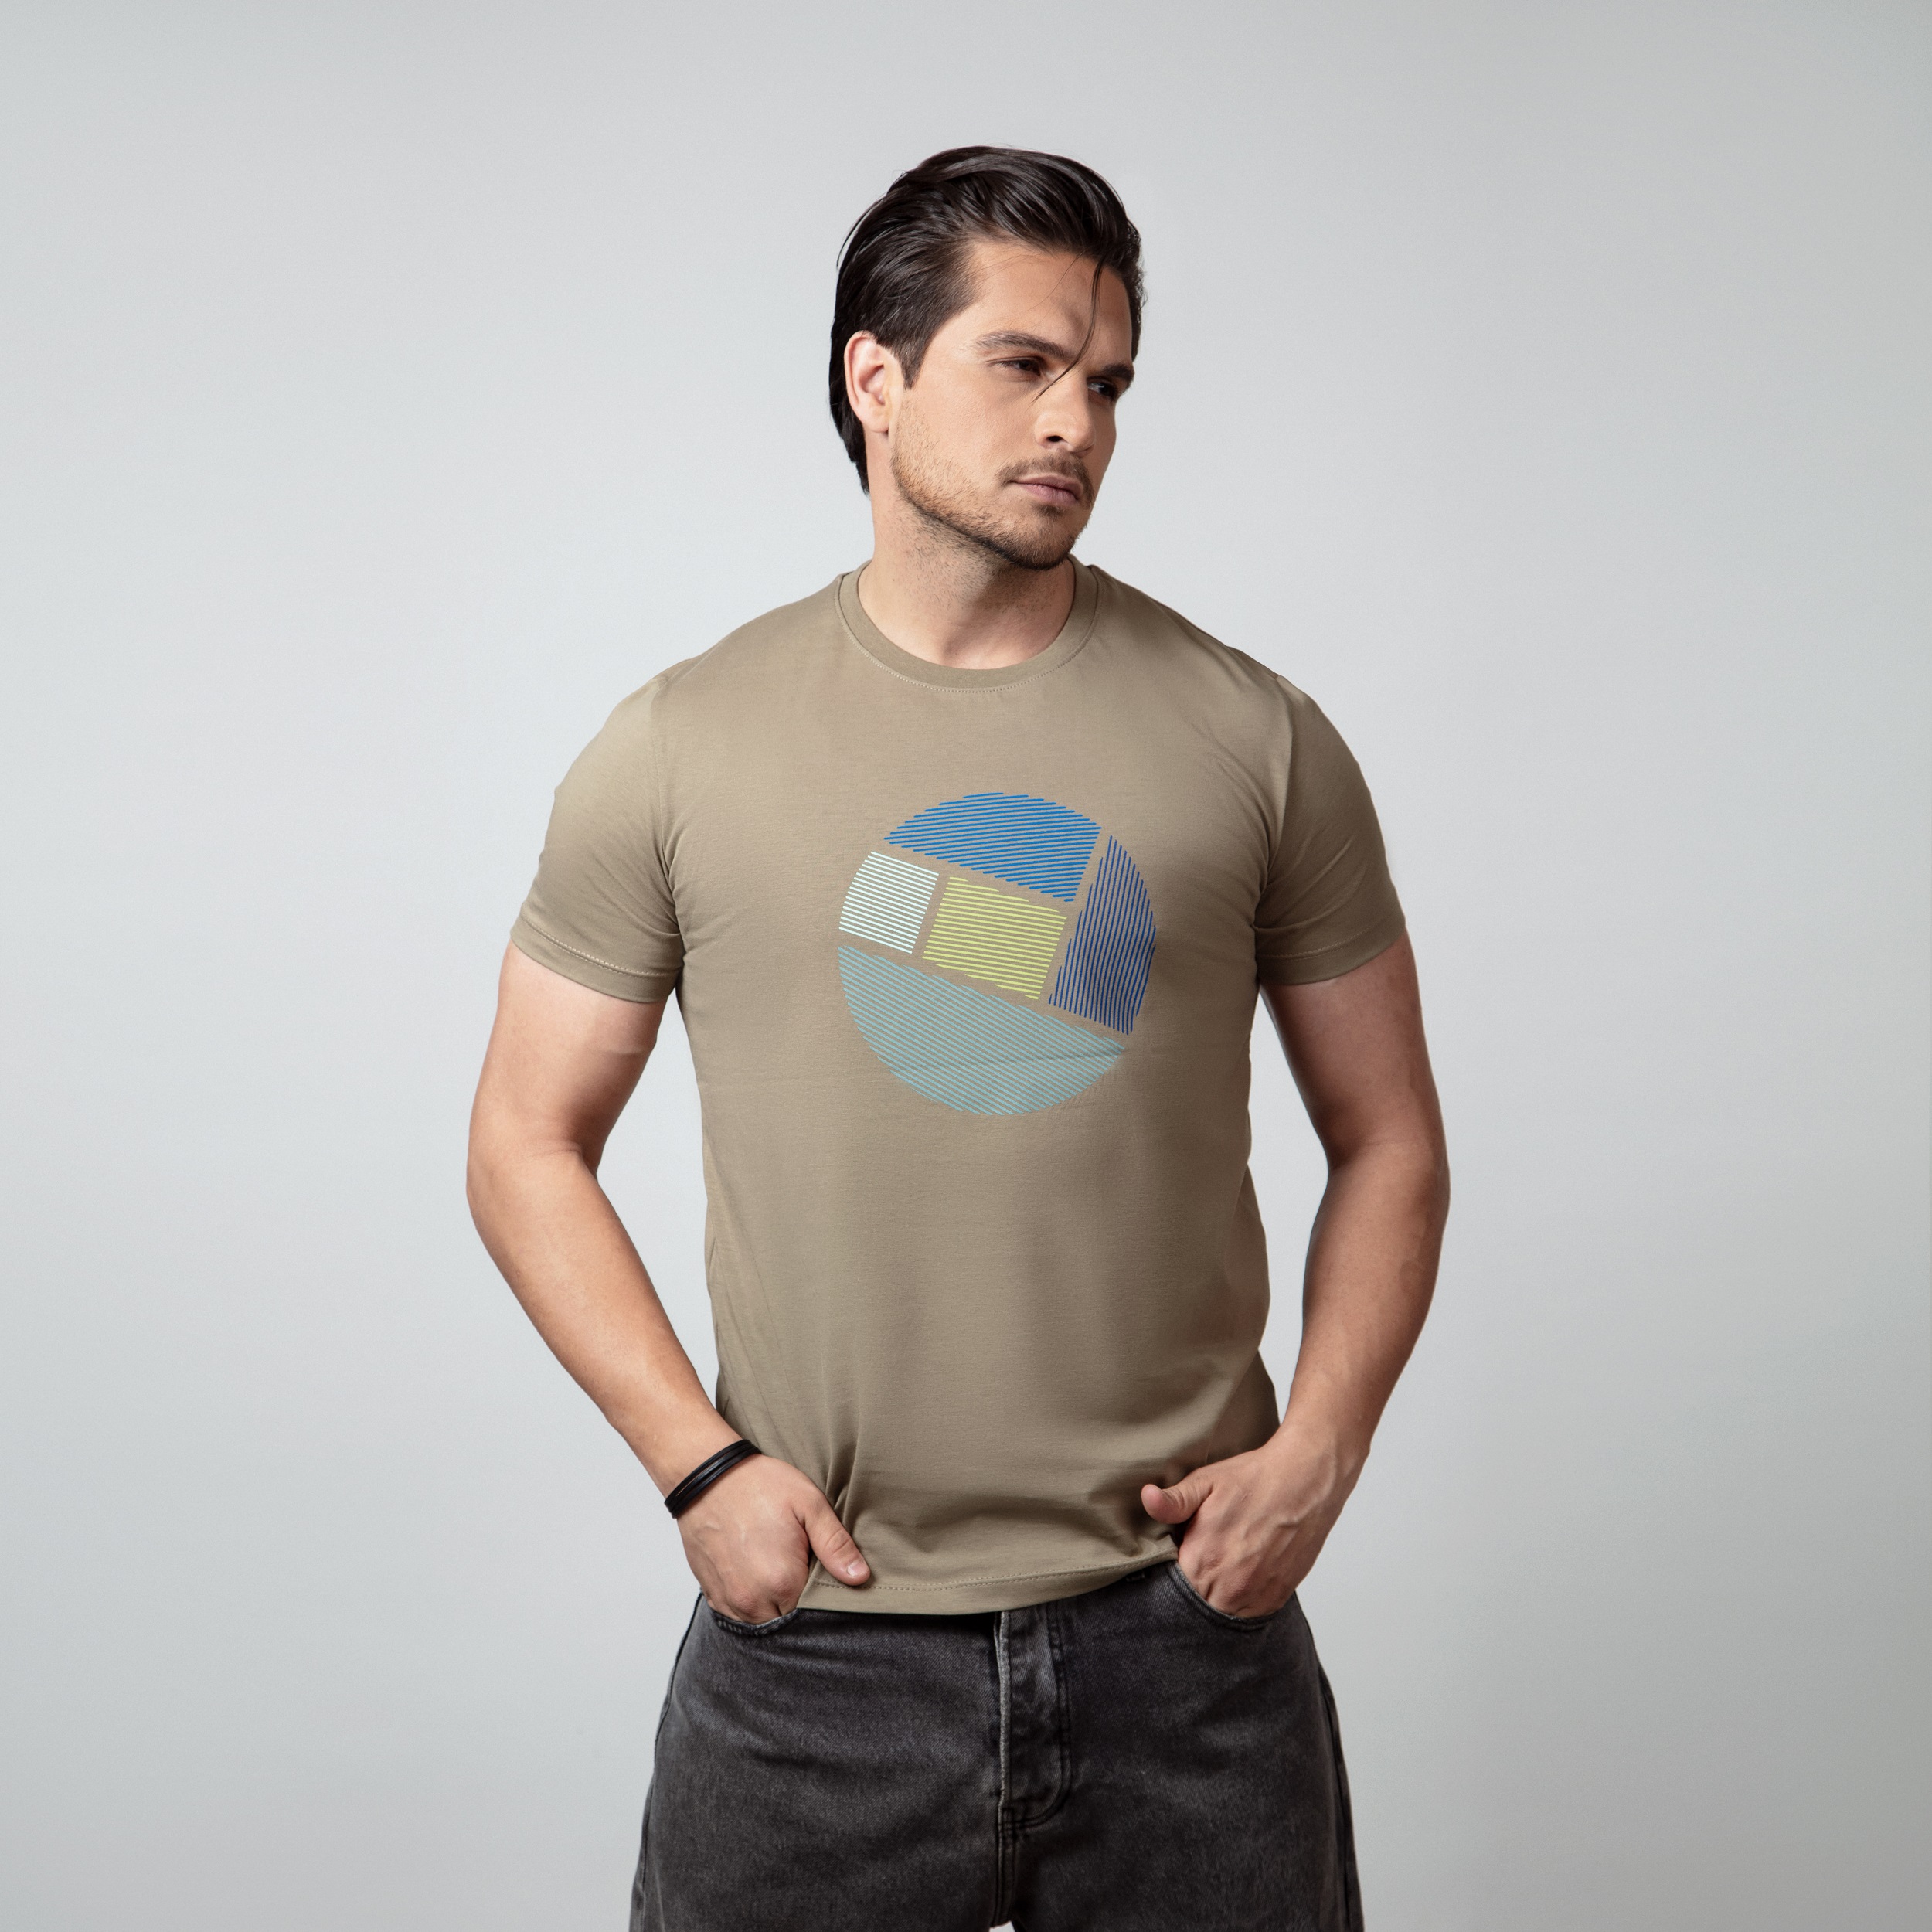 تی شرت آستین کوتاه مردانه باینت مدل 751-2